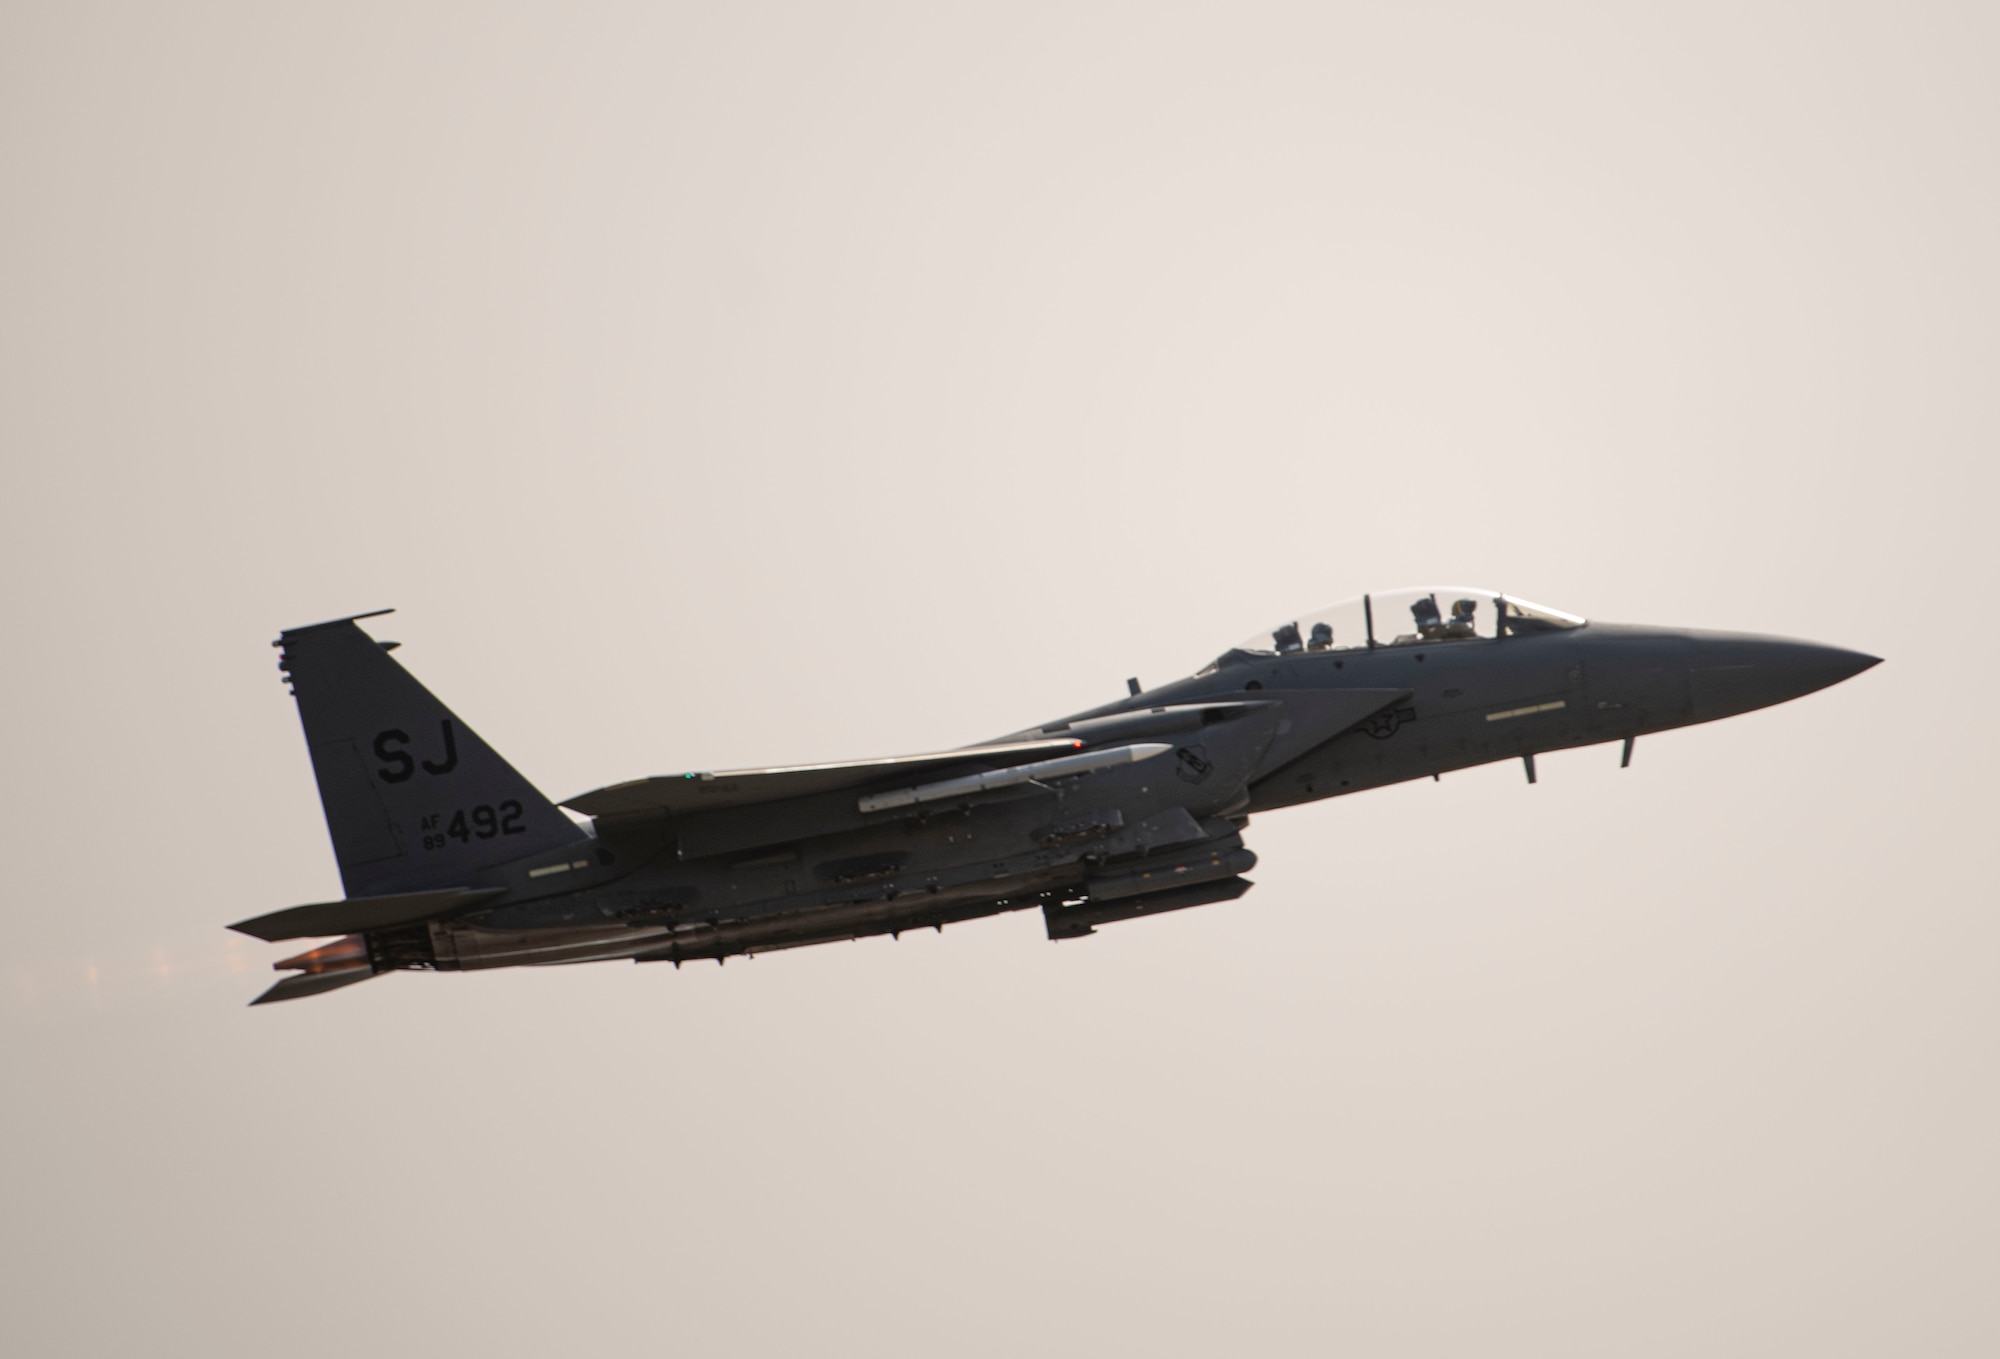 an F-16 fighter jet flies through the air